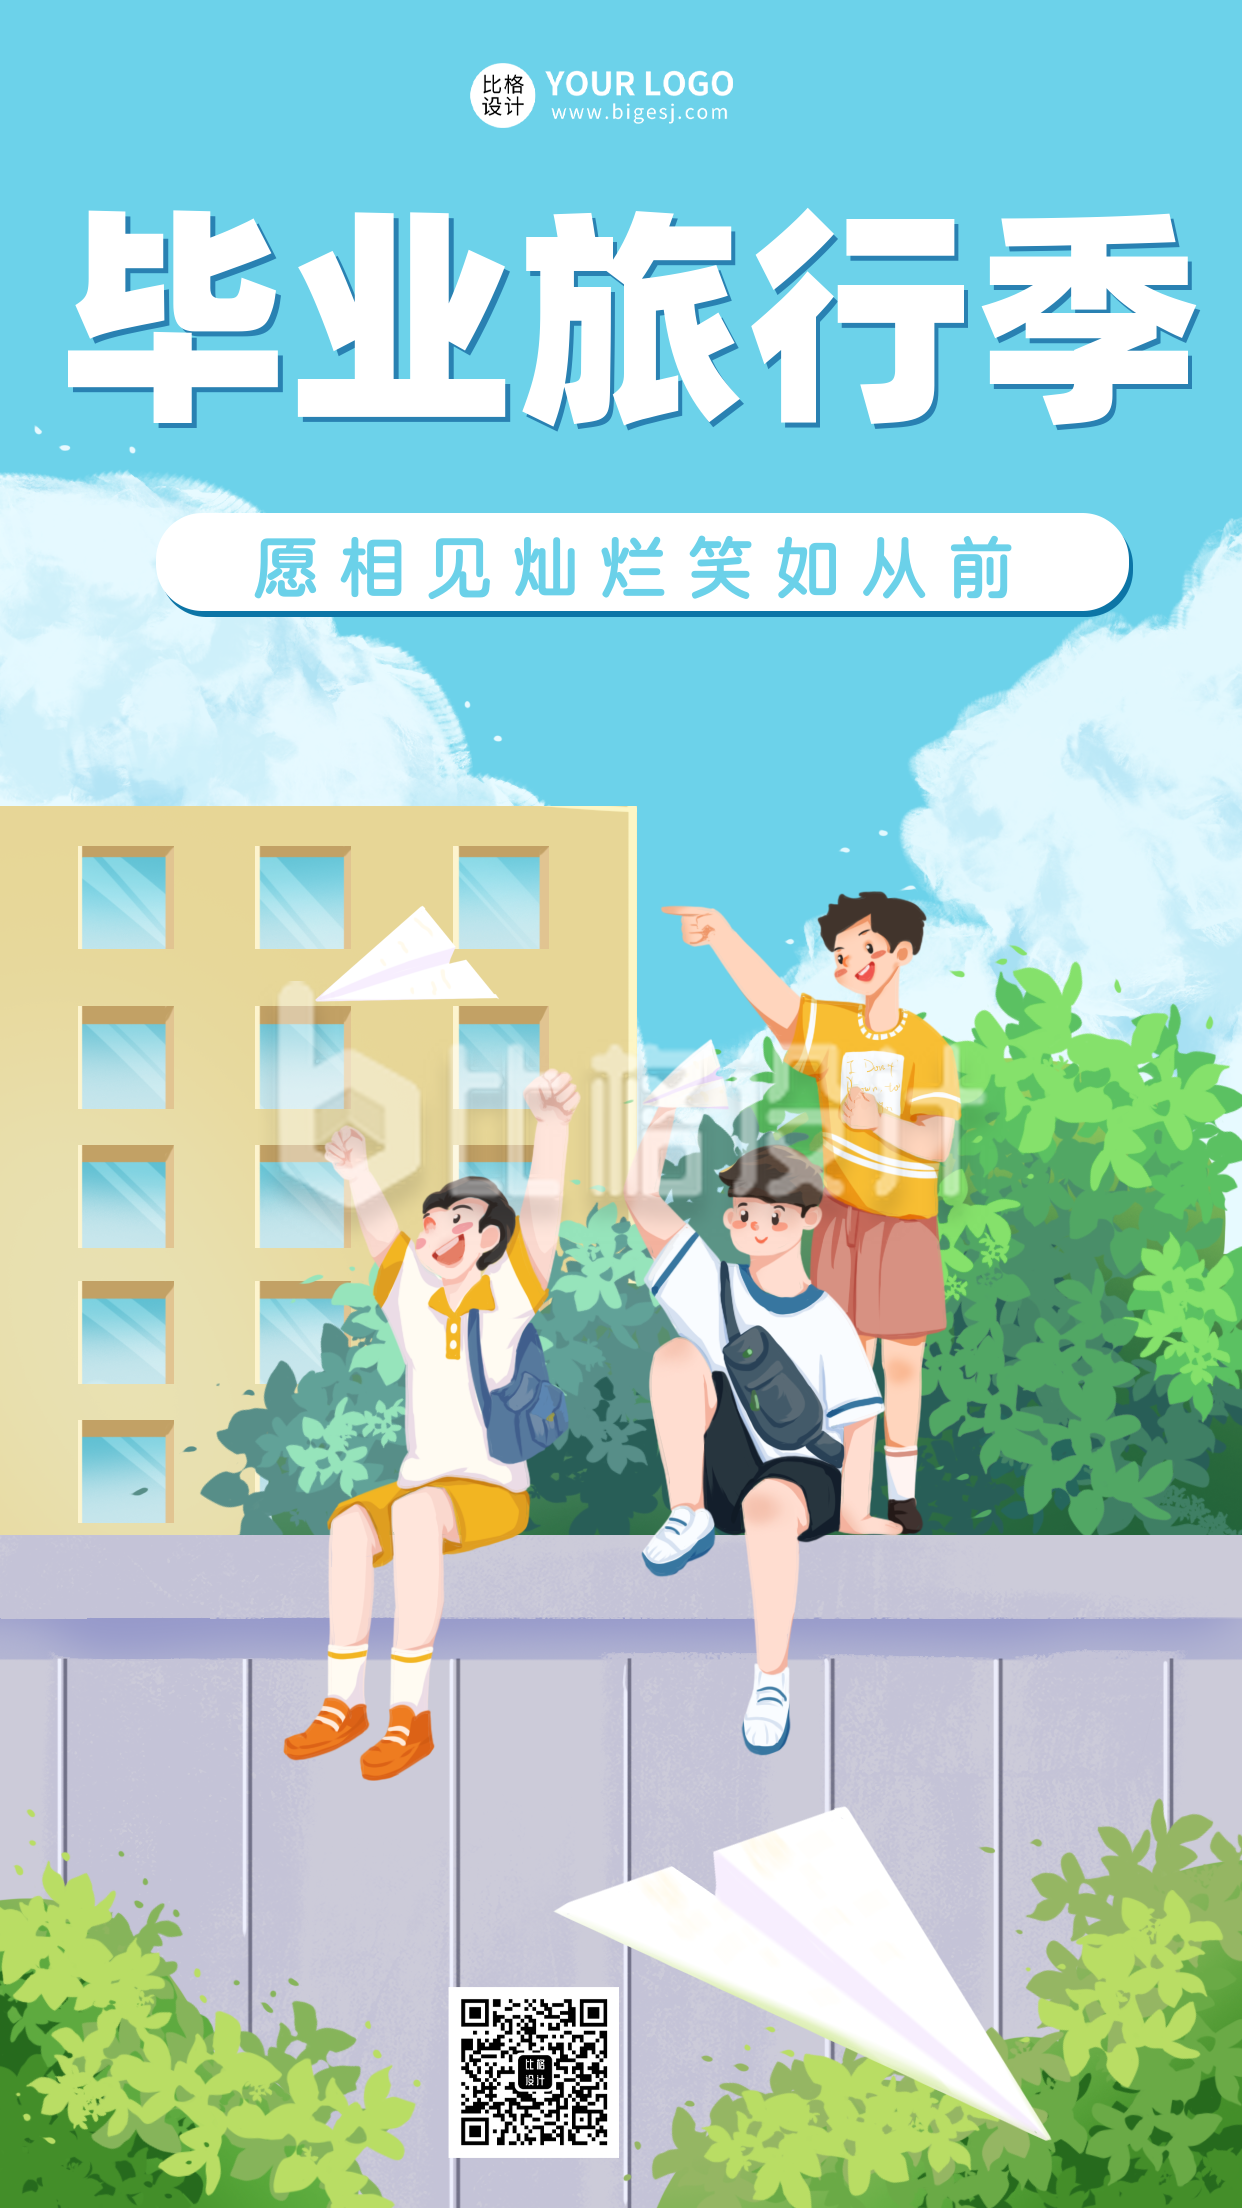 毕业季青春旅游出行宣传活动主题手机海报